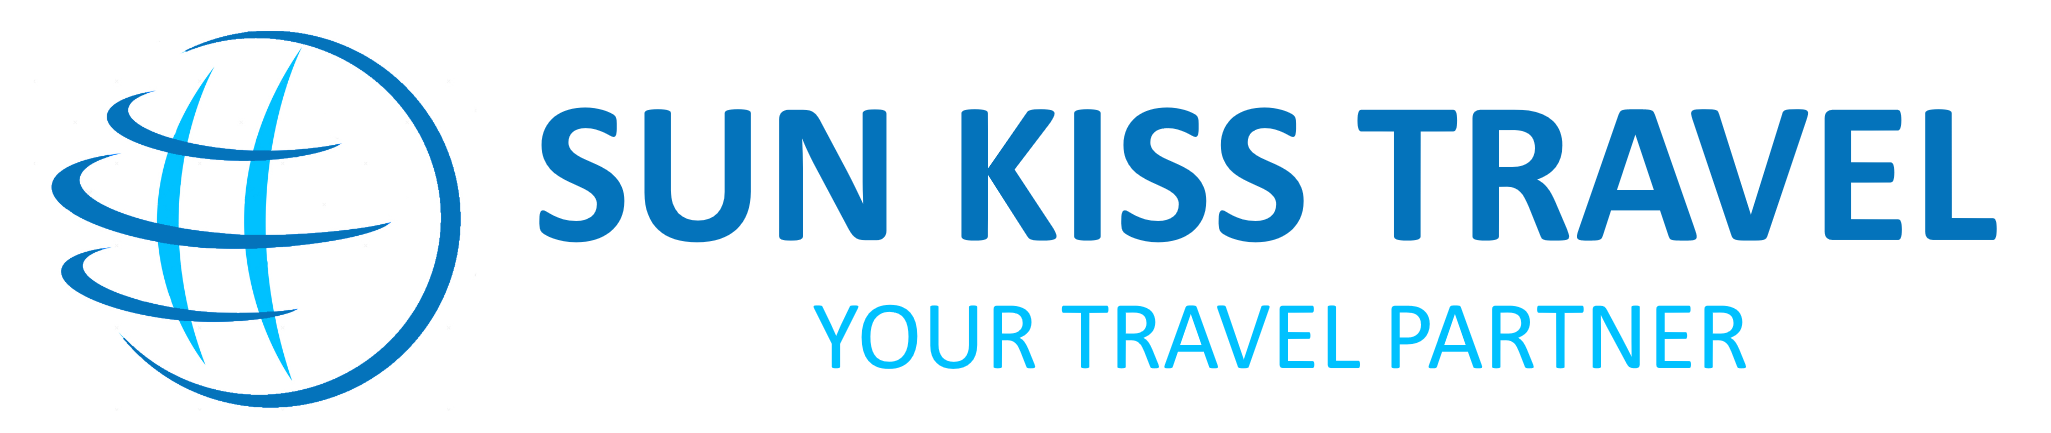 Sun Kiss Travel – organizacja wyjazdów do największych parków rozrywki. Pakiety pobytowe w Disneyland Paryż, Legoland, Heidepark, Asterix, Dubai Parks & Resorts, Heidepark i wiele innych parków rozrywki.